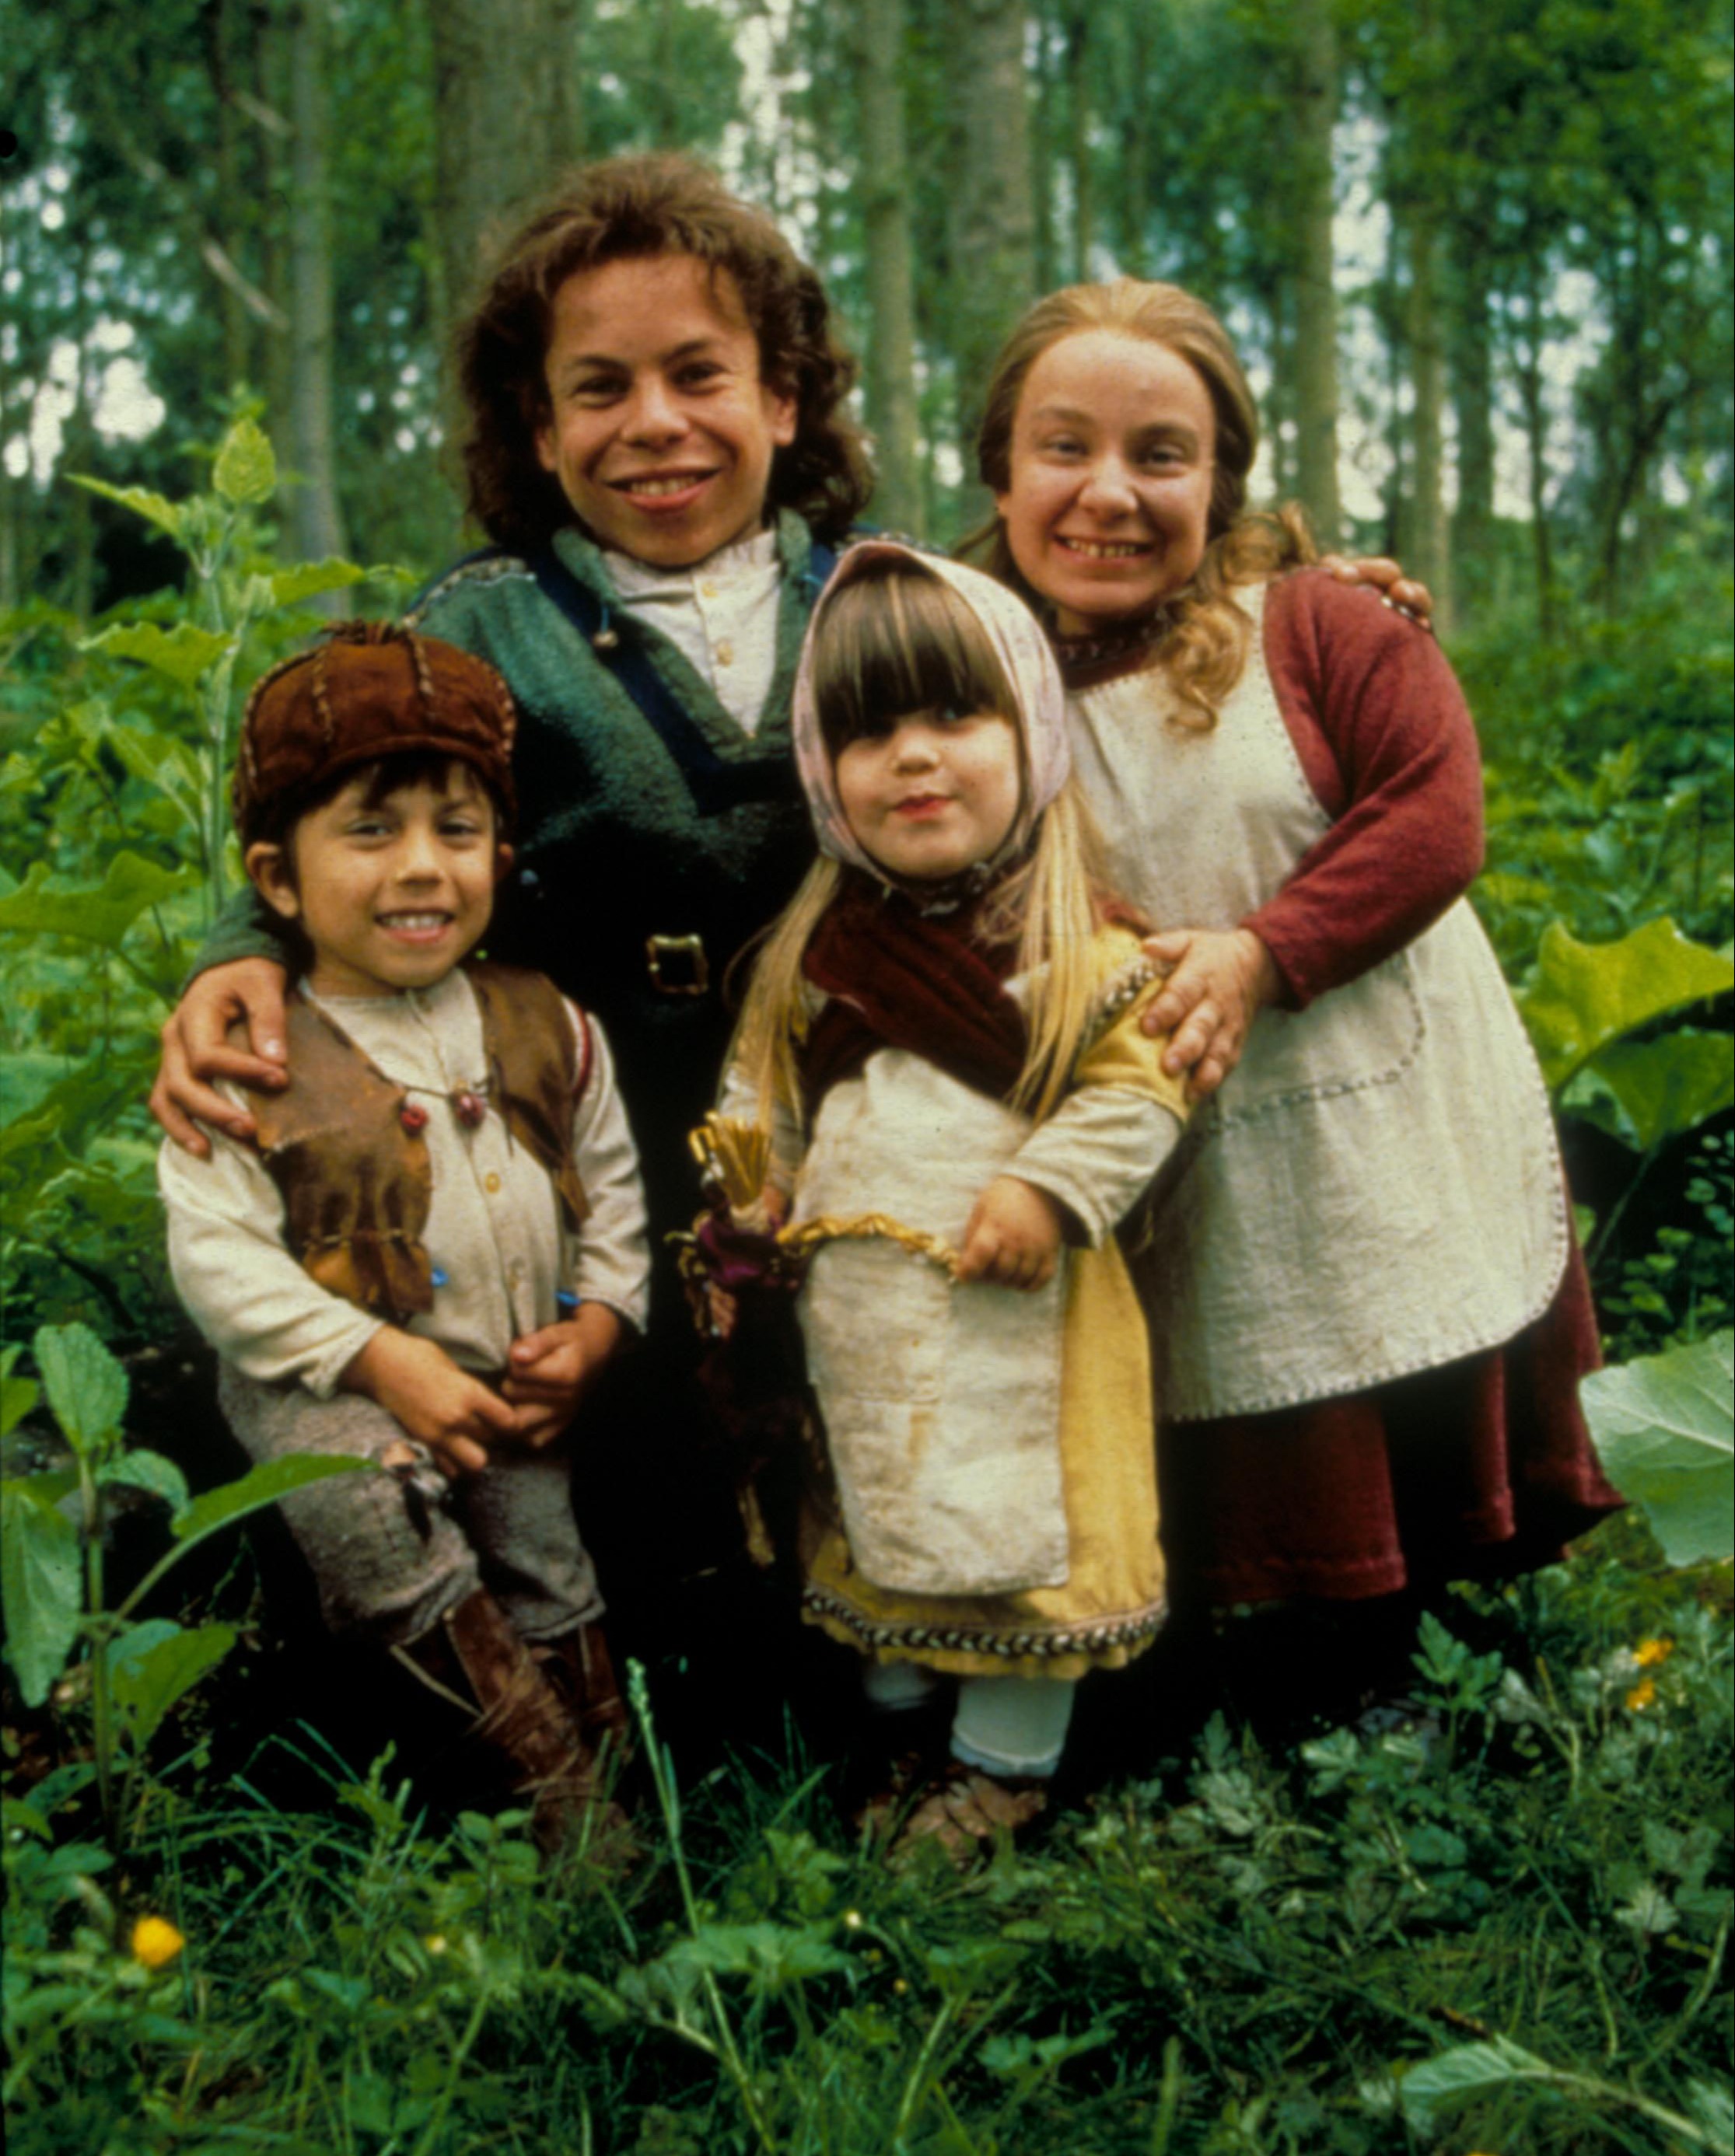 Warwick spielte 1988 die Rolle der Willow und traf Sam (nicht abgebildet) am Set